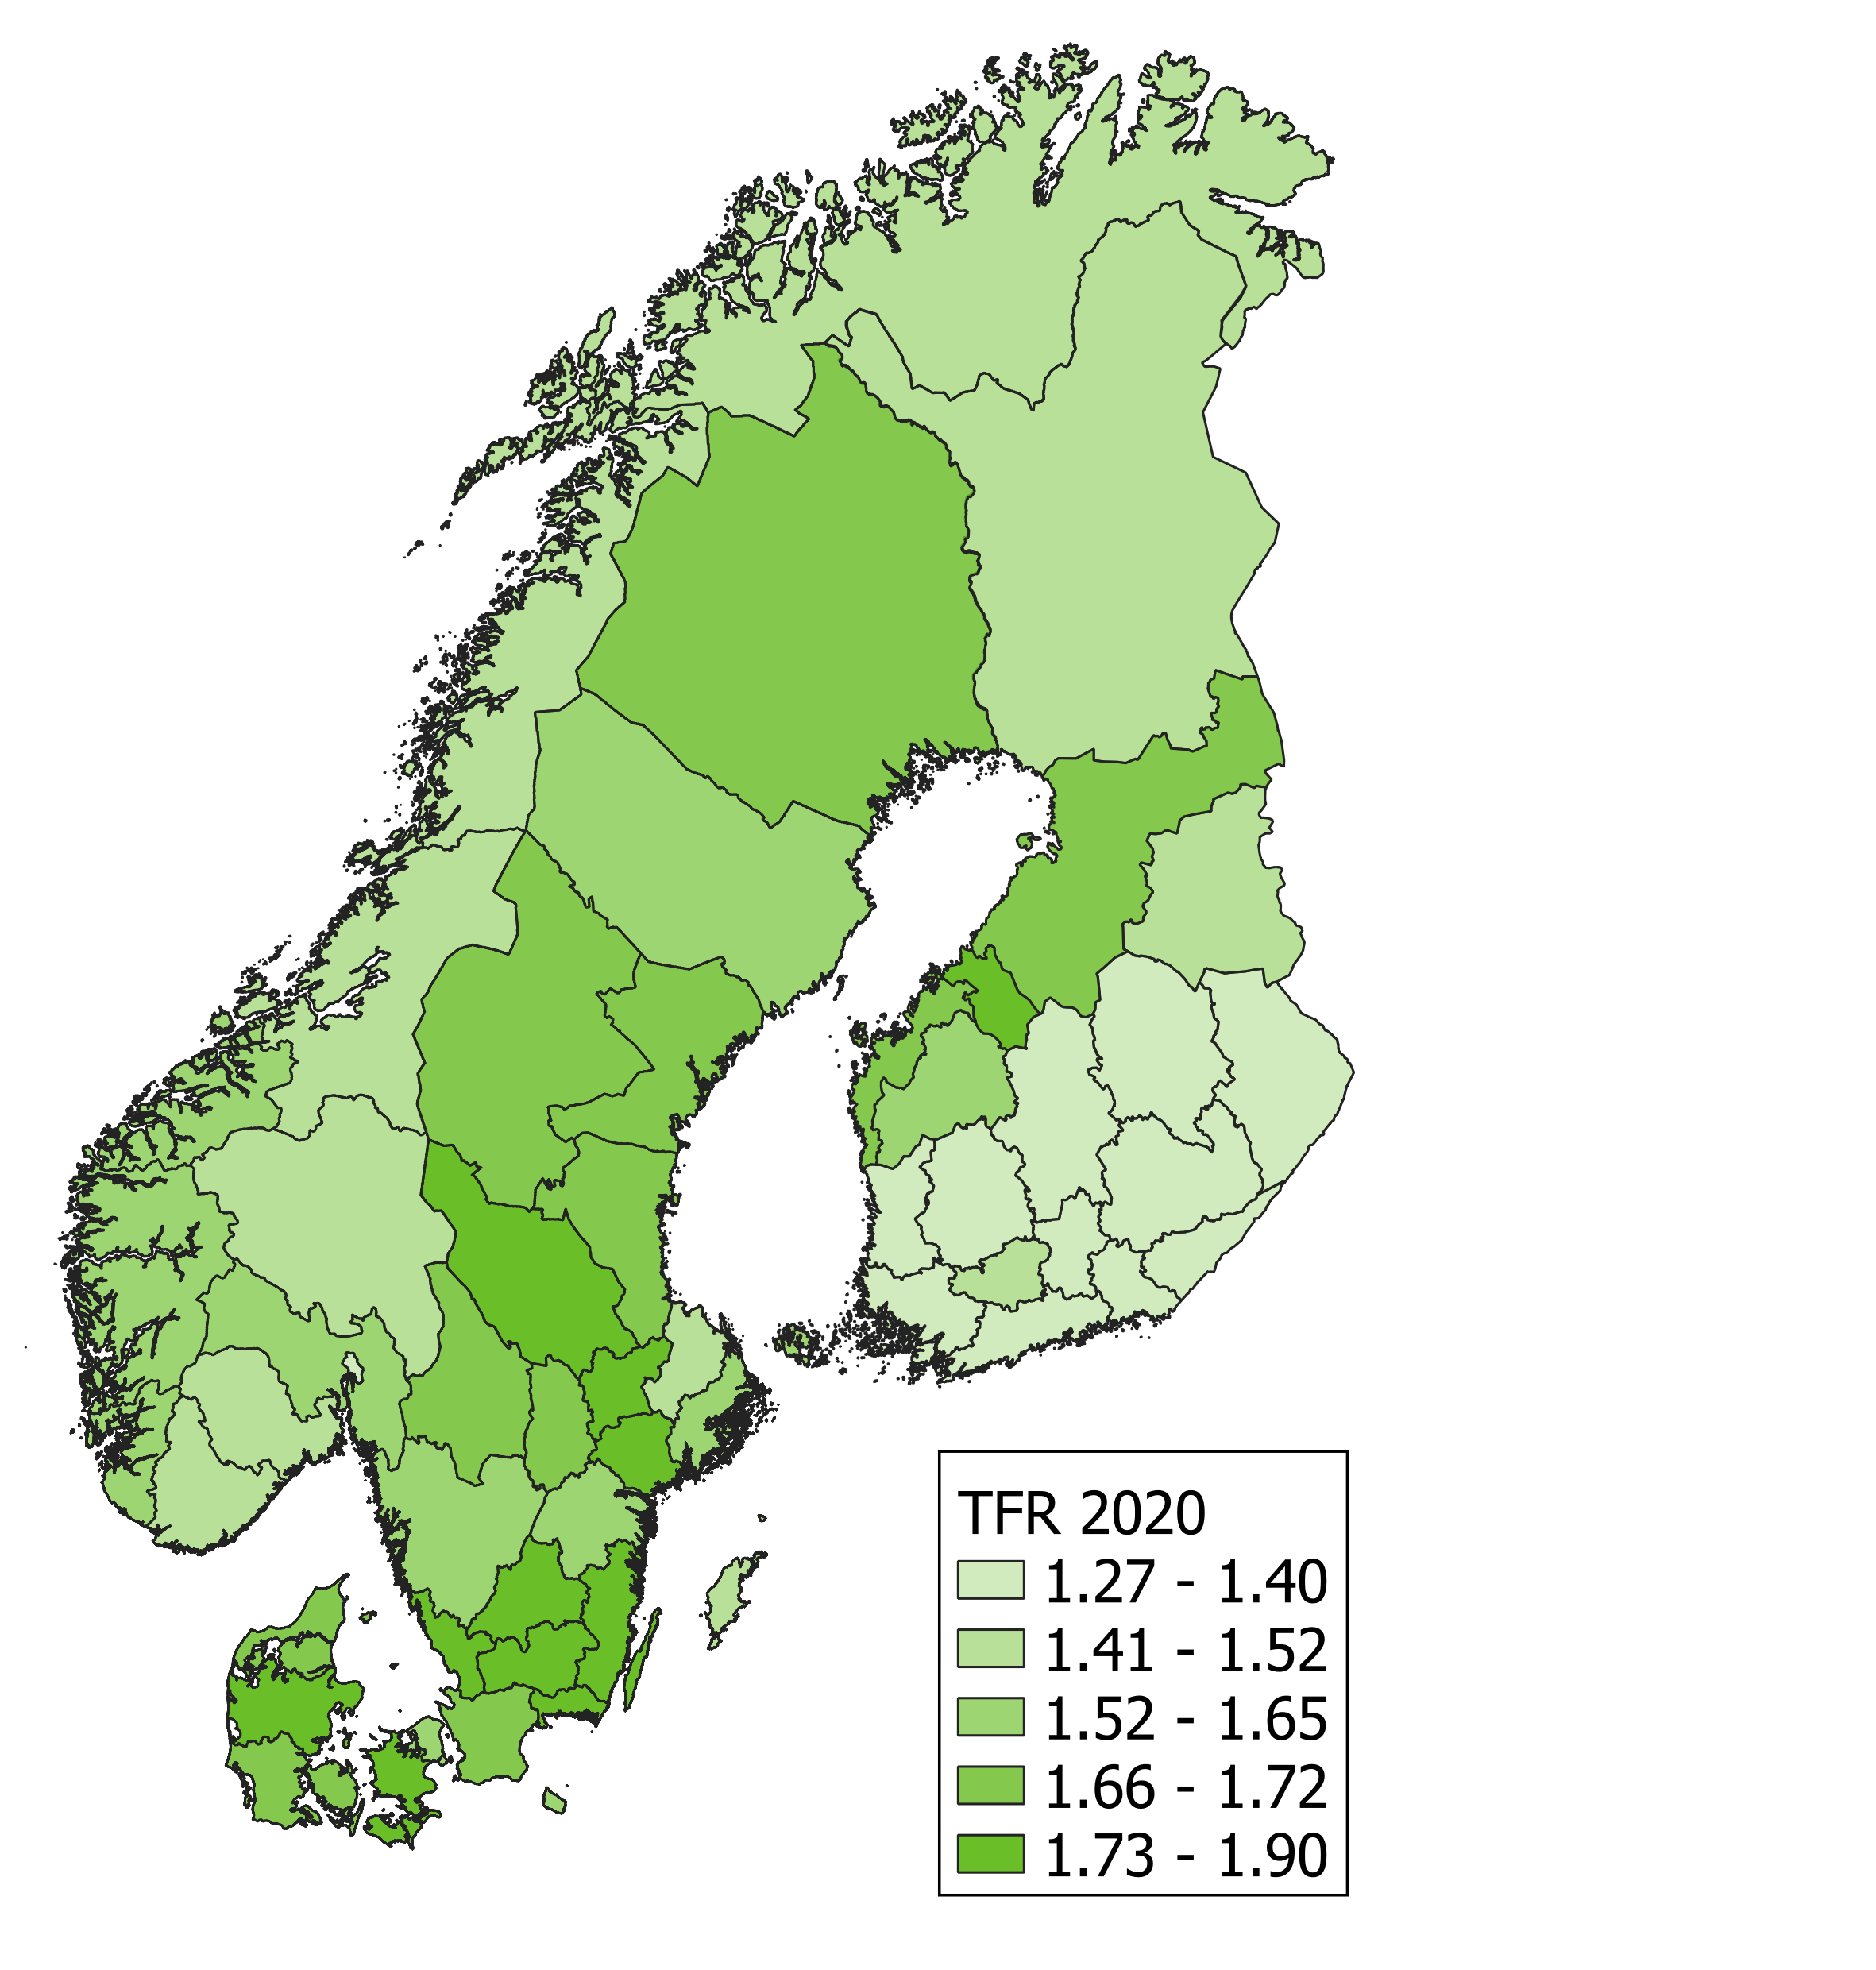 Kloropeettikartta kokonaishedelmällisyyden jakaantumisesta maakunnittain Skandinaviassa ja Suomessa.